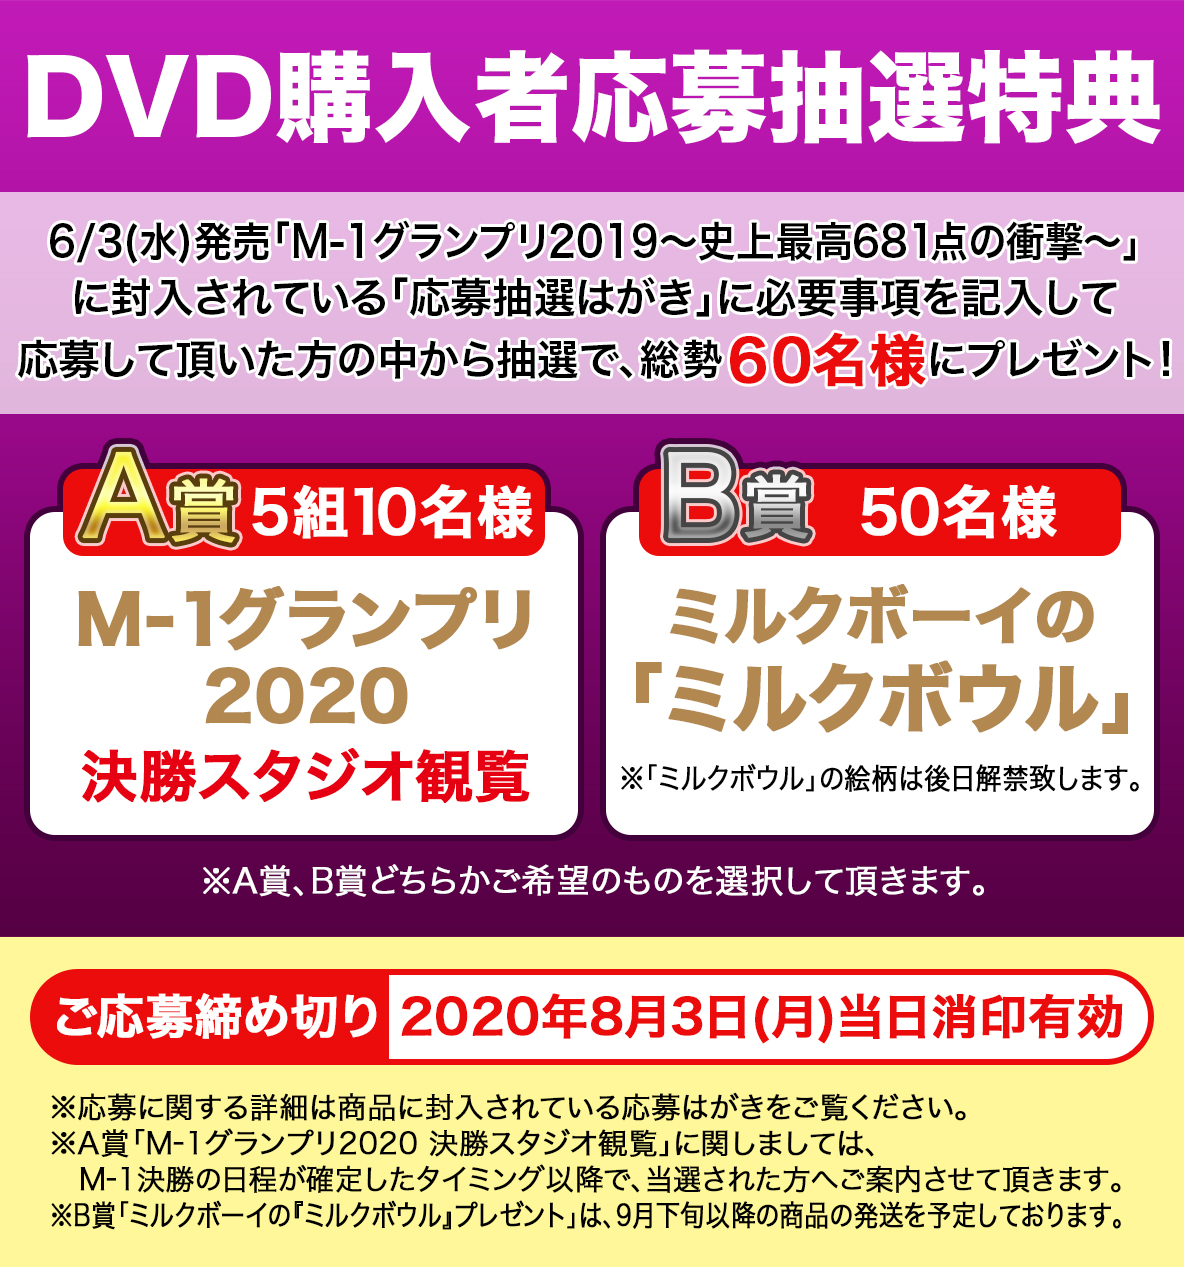 6 3 水 発売 M 1グランプリ19 史上最高681点の衝撃 Dvd購入者特典決定 5 12更新 M 1グランプリ News Yoshimoto Music Co Ltd よしもとミュージック